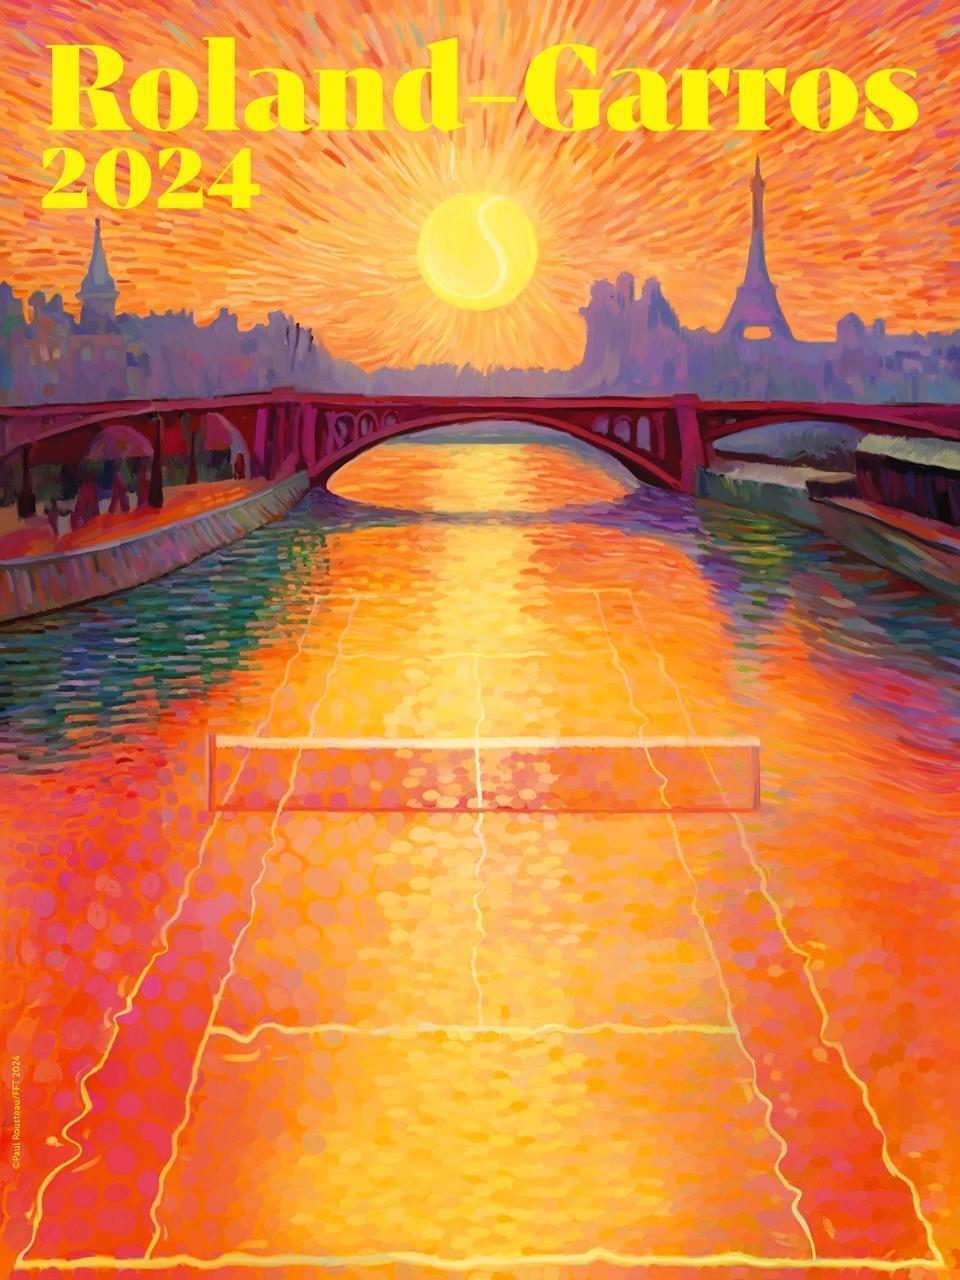 RolandGarros. L’affiche de l’édition 2024 dévoilée, avec un clin d’œil aux Jeux Angers